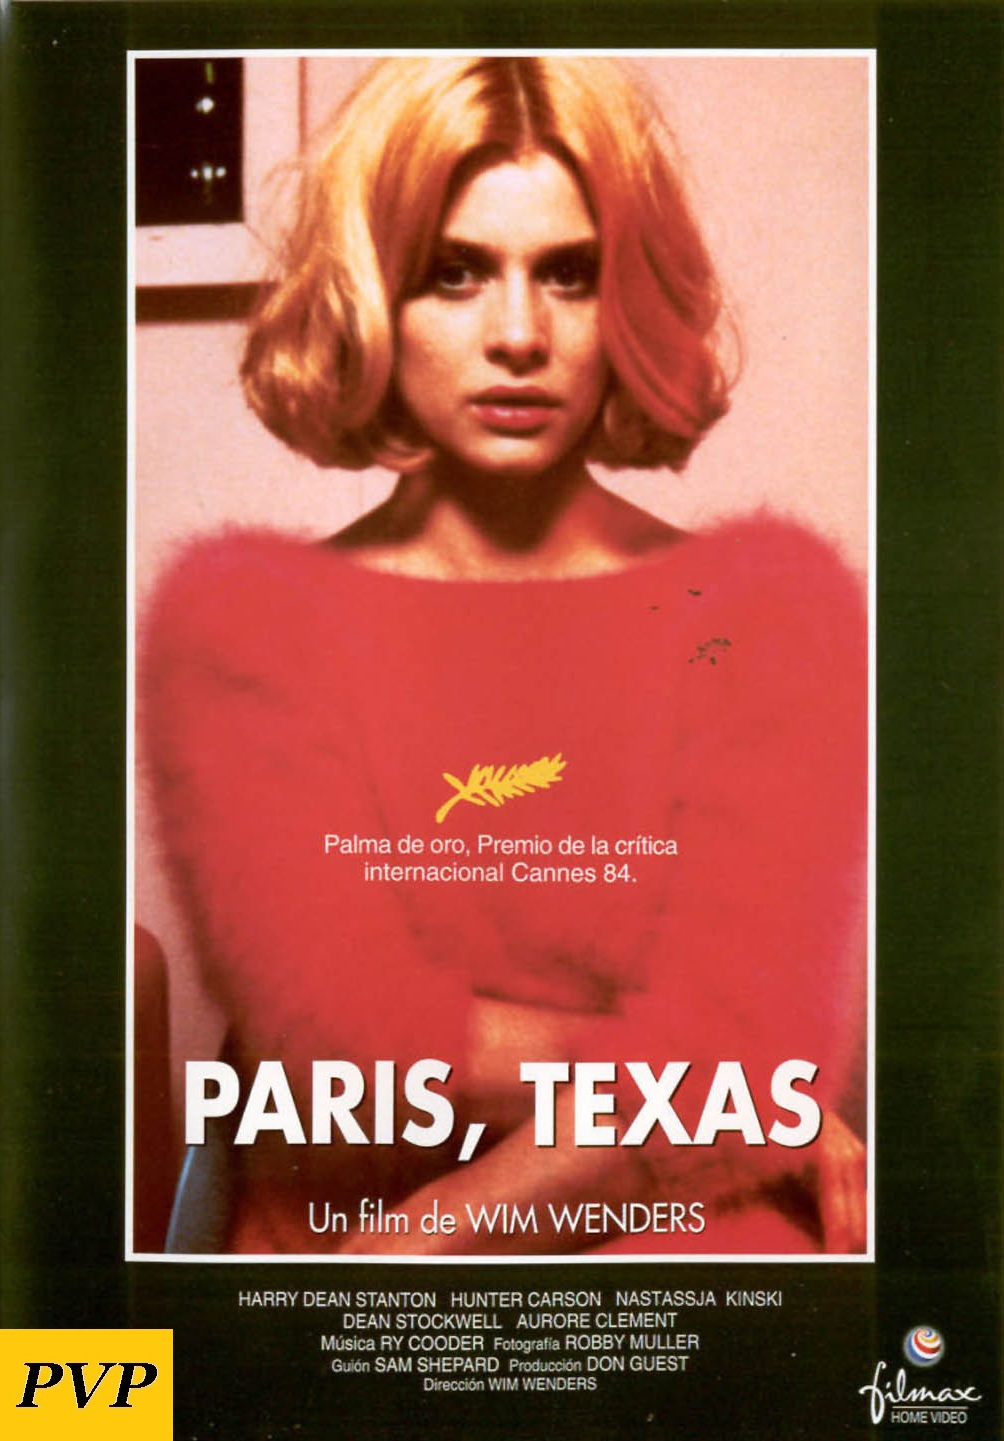 El nombre del grupo surgió de la película "París, Texas", de Wim Wenders